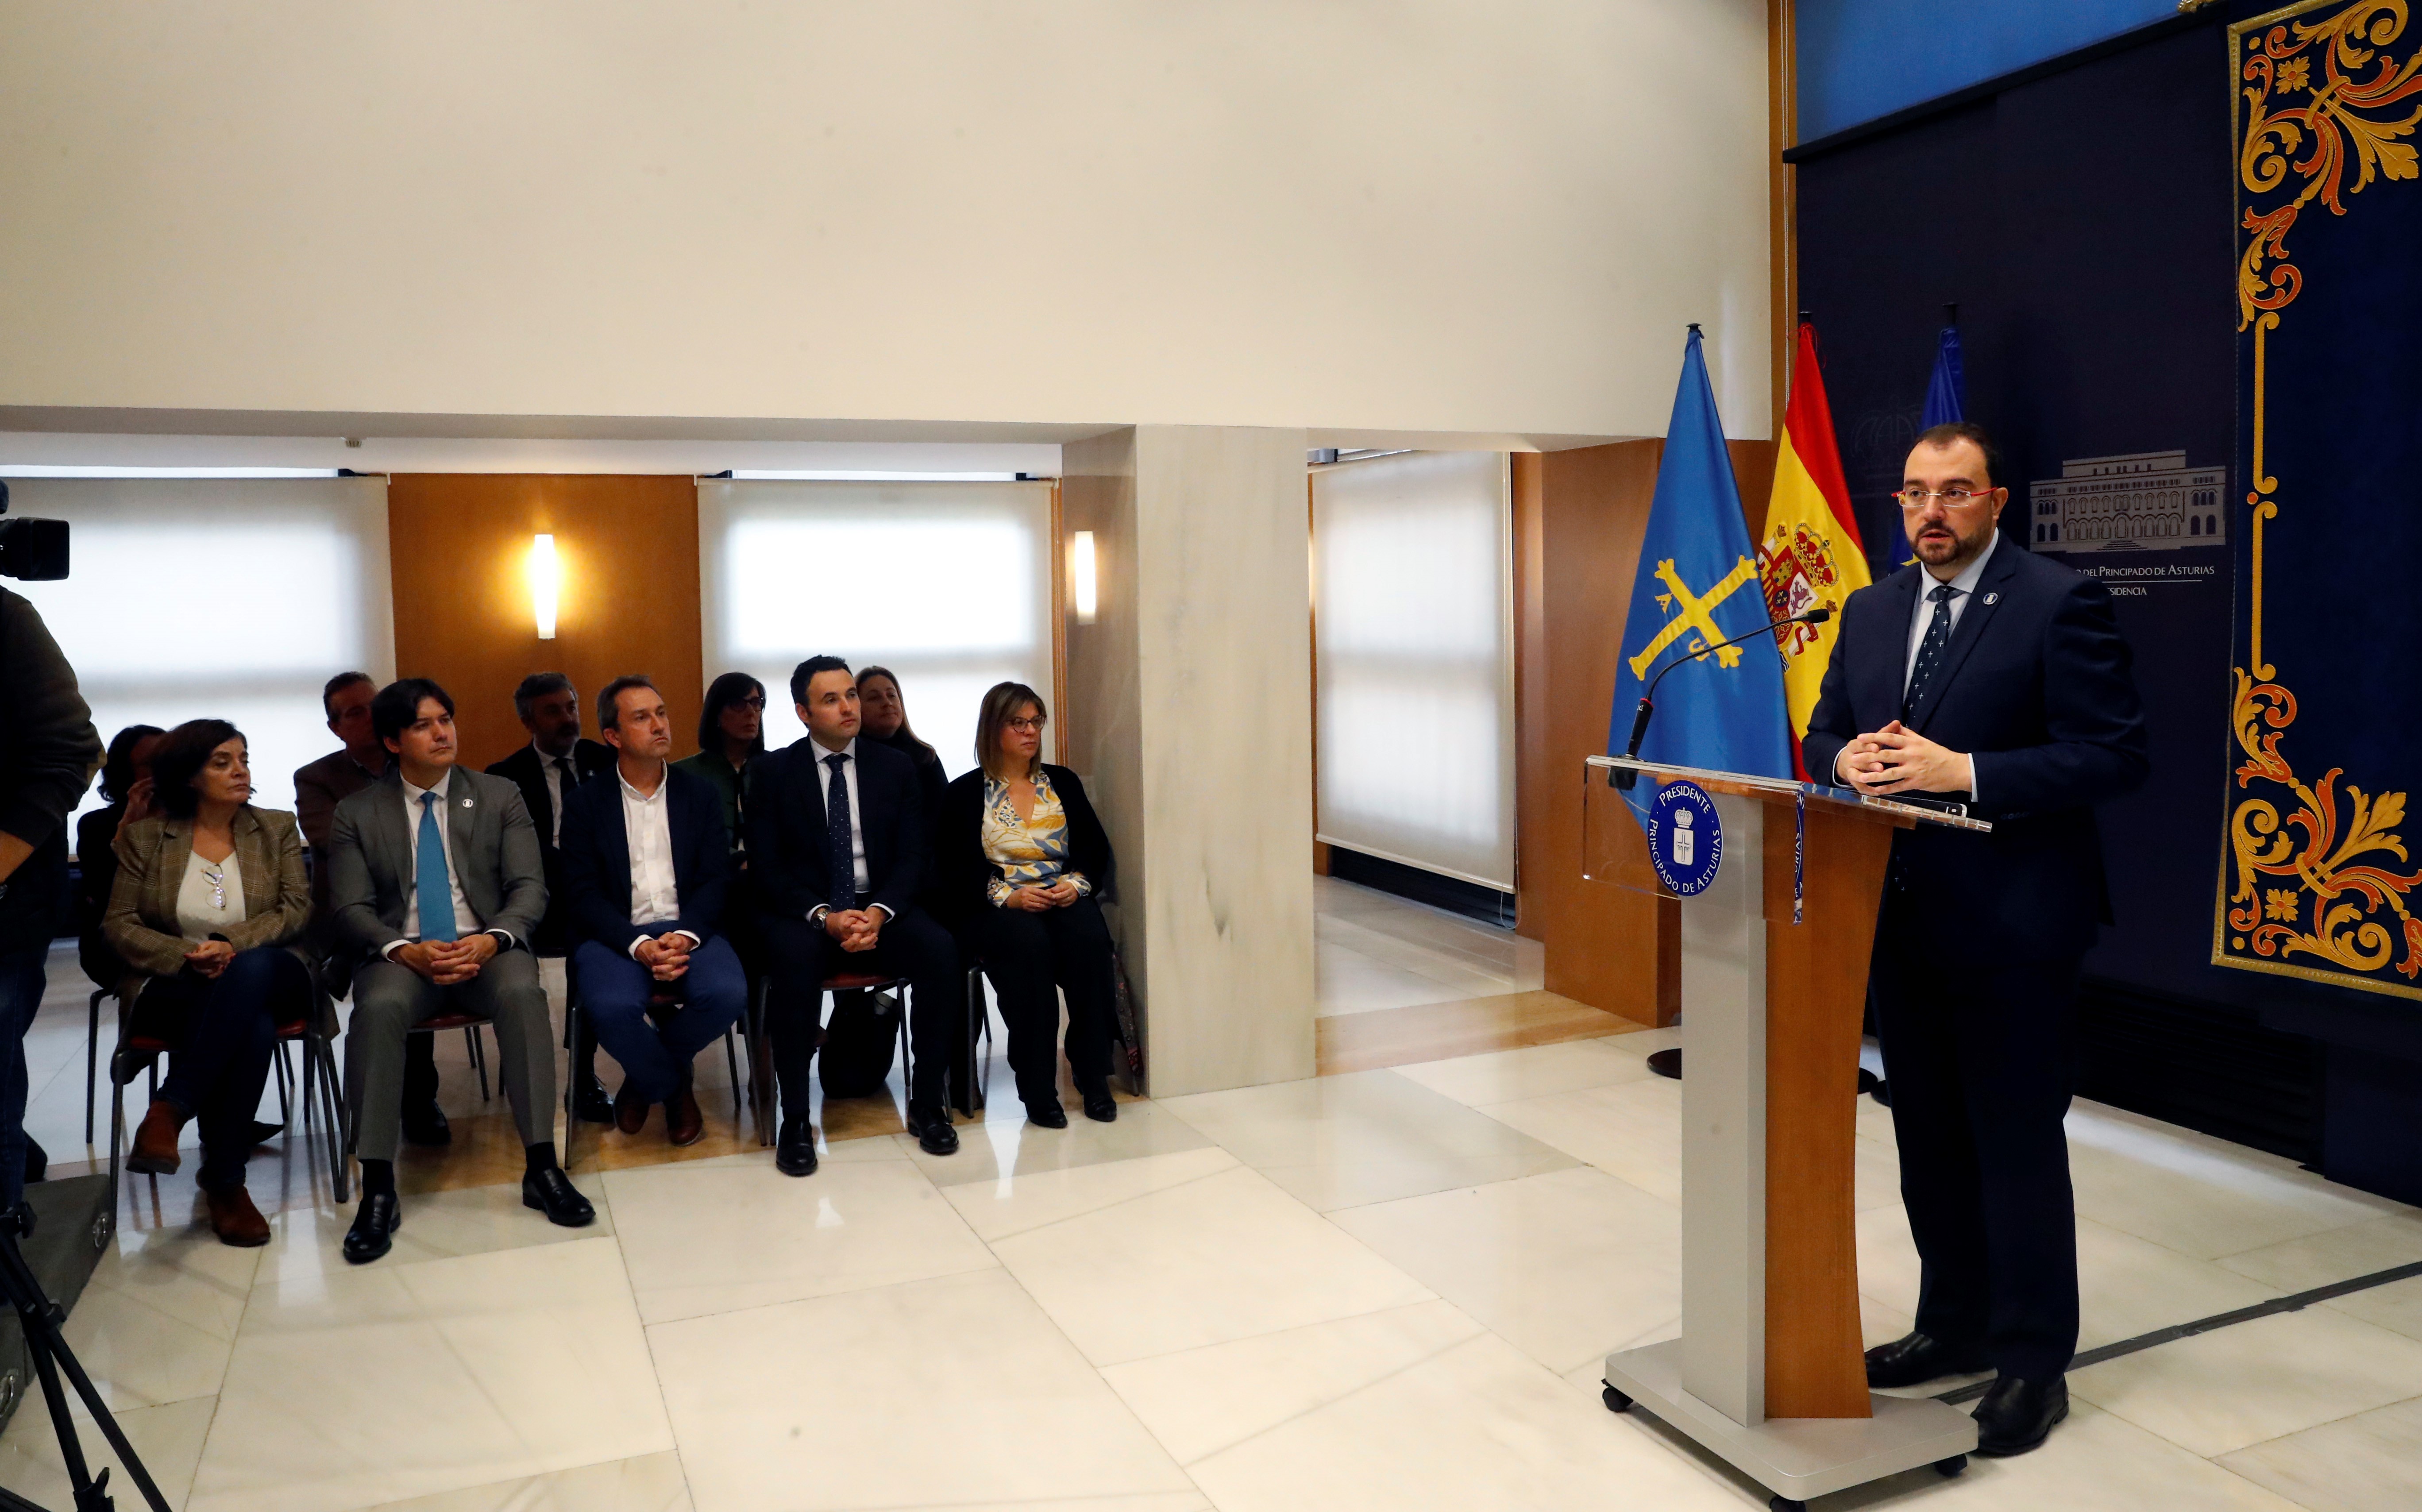 Imagen - “El Gobierno de Asturias ha puesto en marcha el reloj de la década del cambio: en tres meses hemos dado cuerda para los próximos diez años”, afirma el presidente